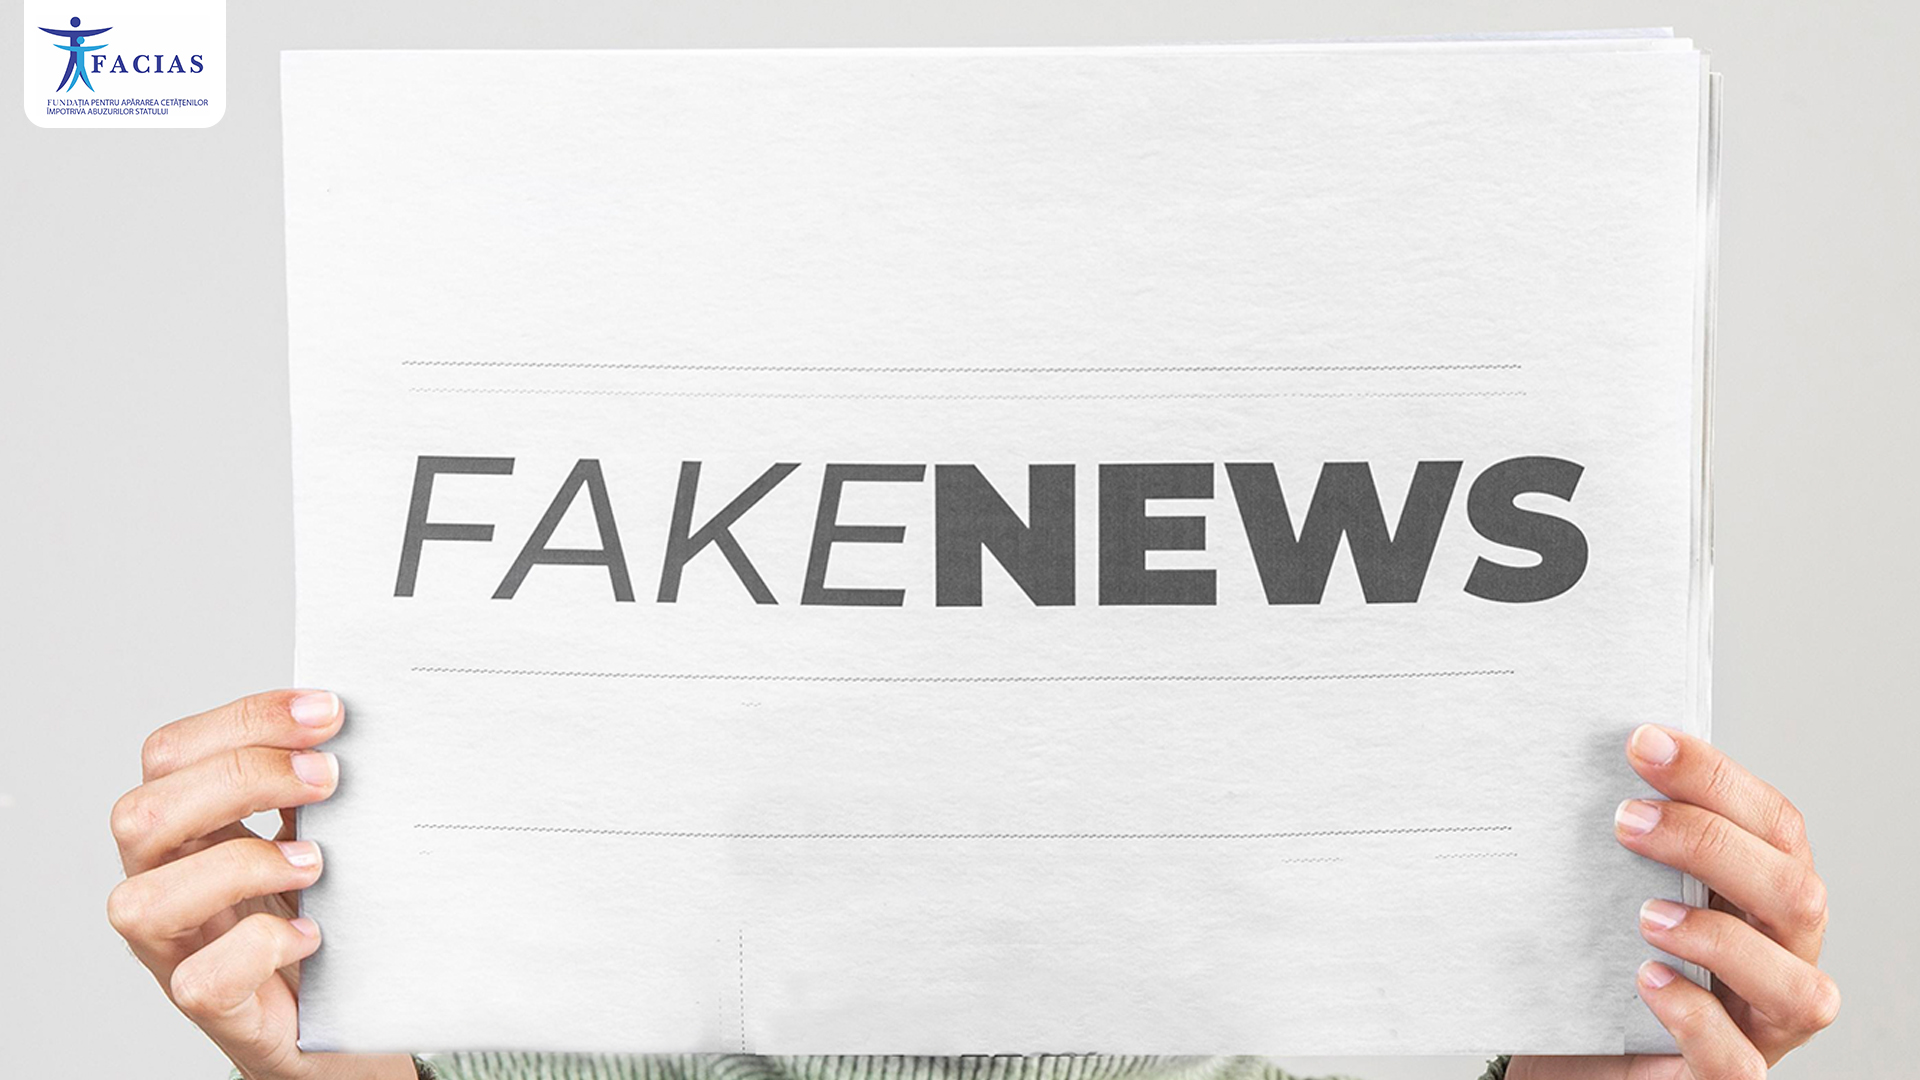 , Victorie FACIAS: Instanta obligă Guvernul să dezvăluie informații despre întâlnirea secretă pe tema Fake News, FACIAS